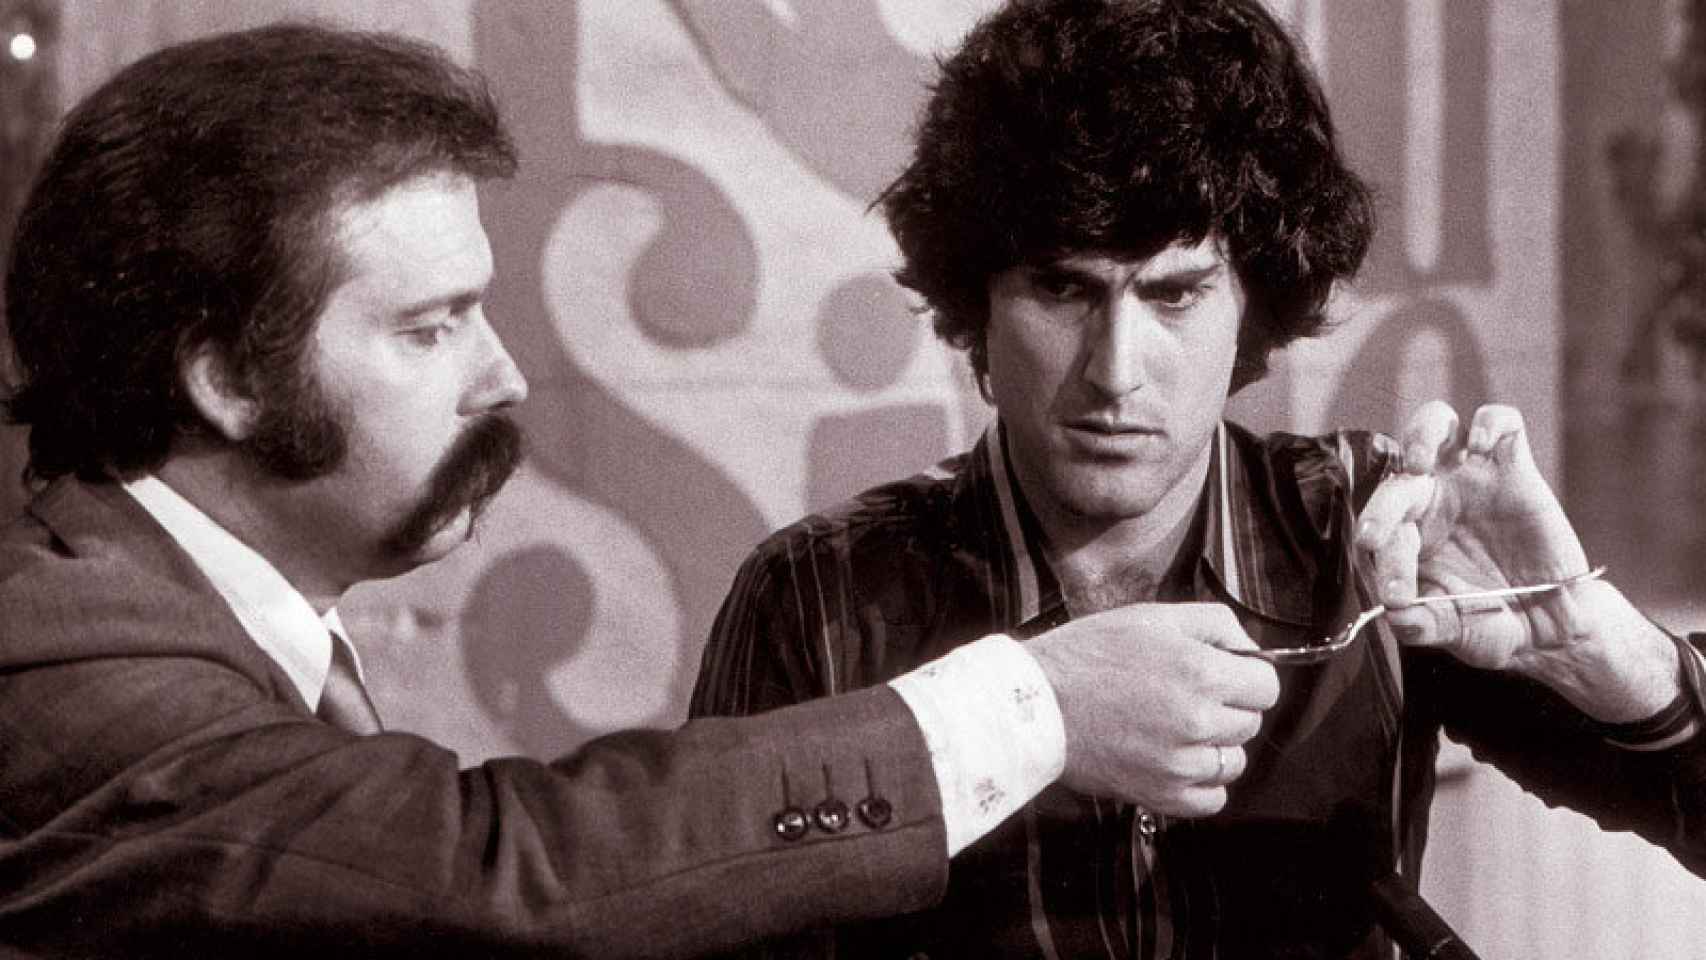 Uri Geller con José María de Íñigo en el programa que le hizo saltar a la fama como doblador de cucharas.